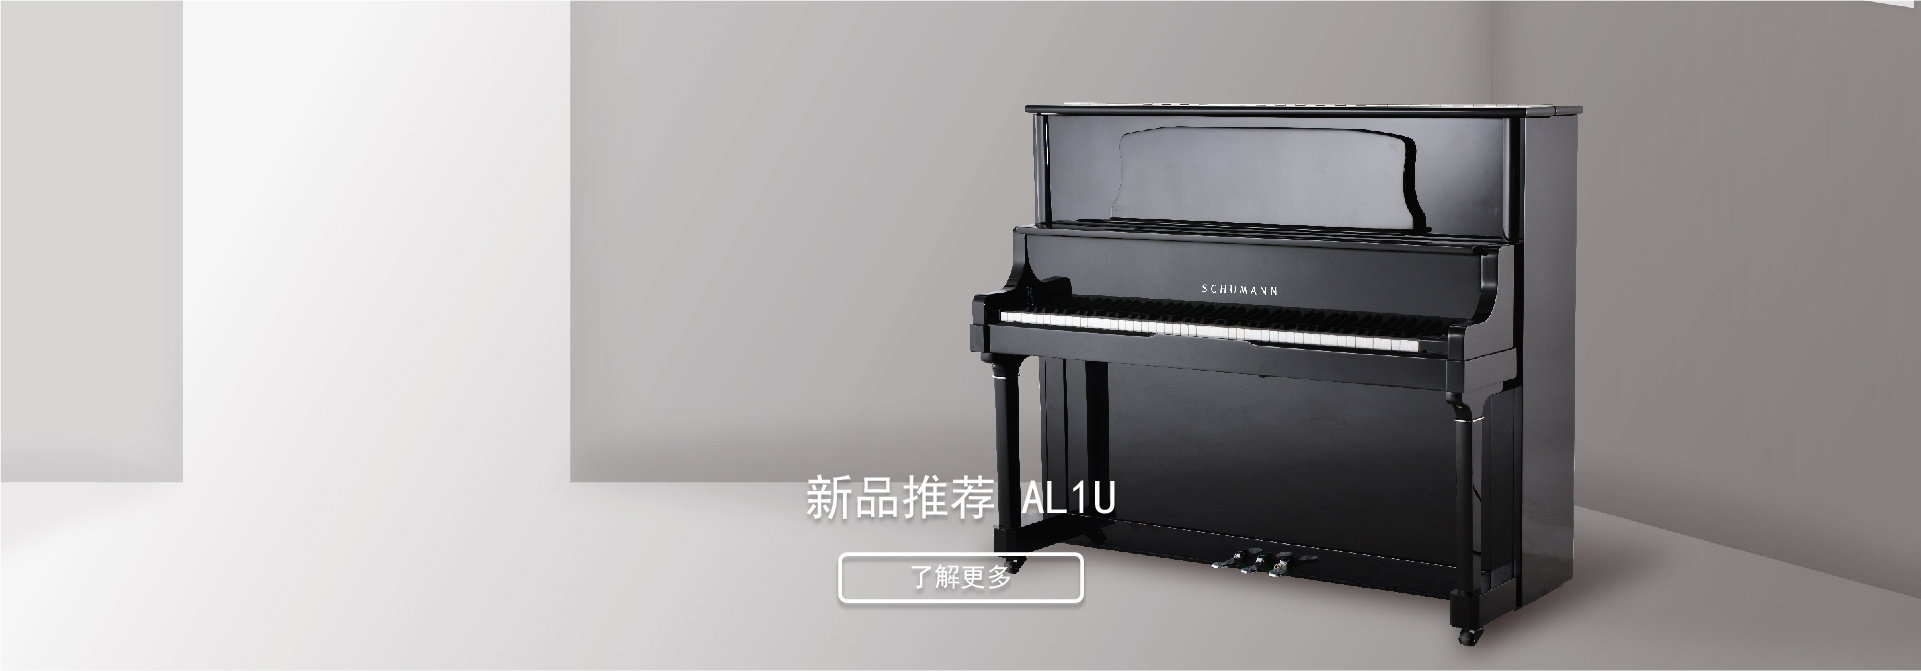 南京舒曼鋼琴制造有限公司